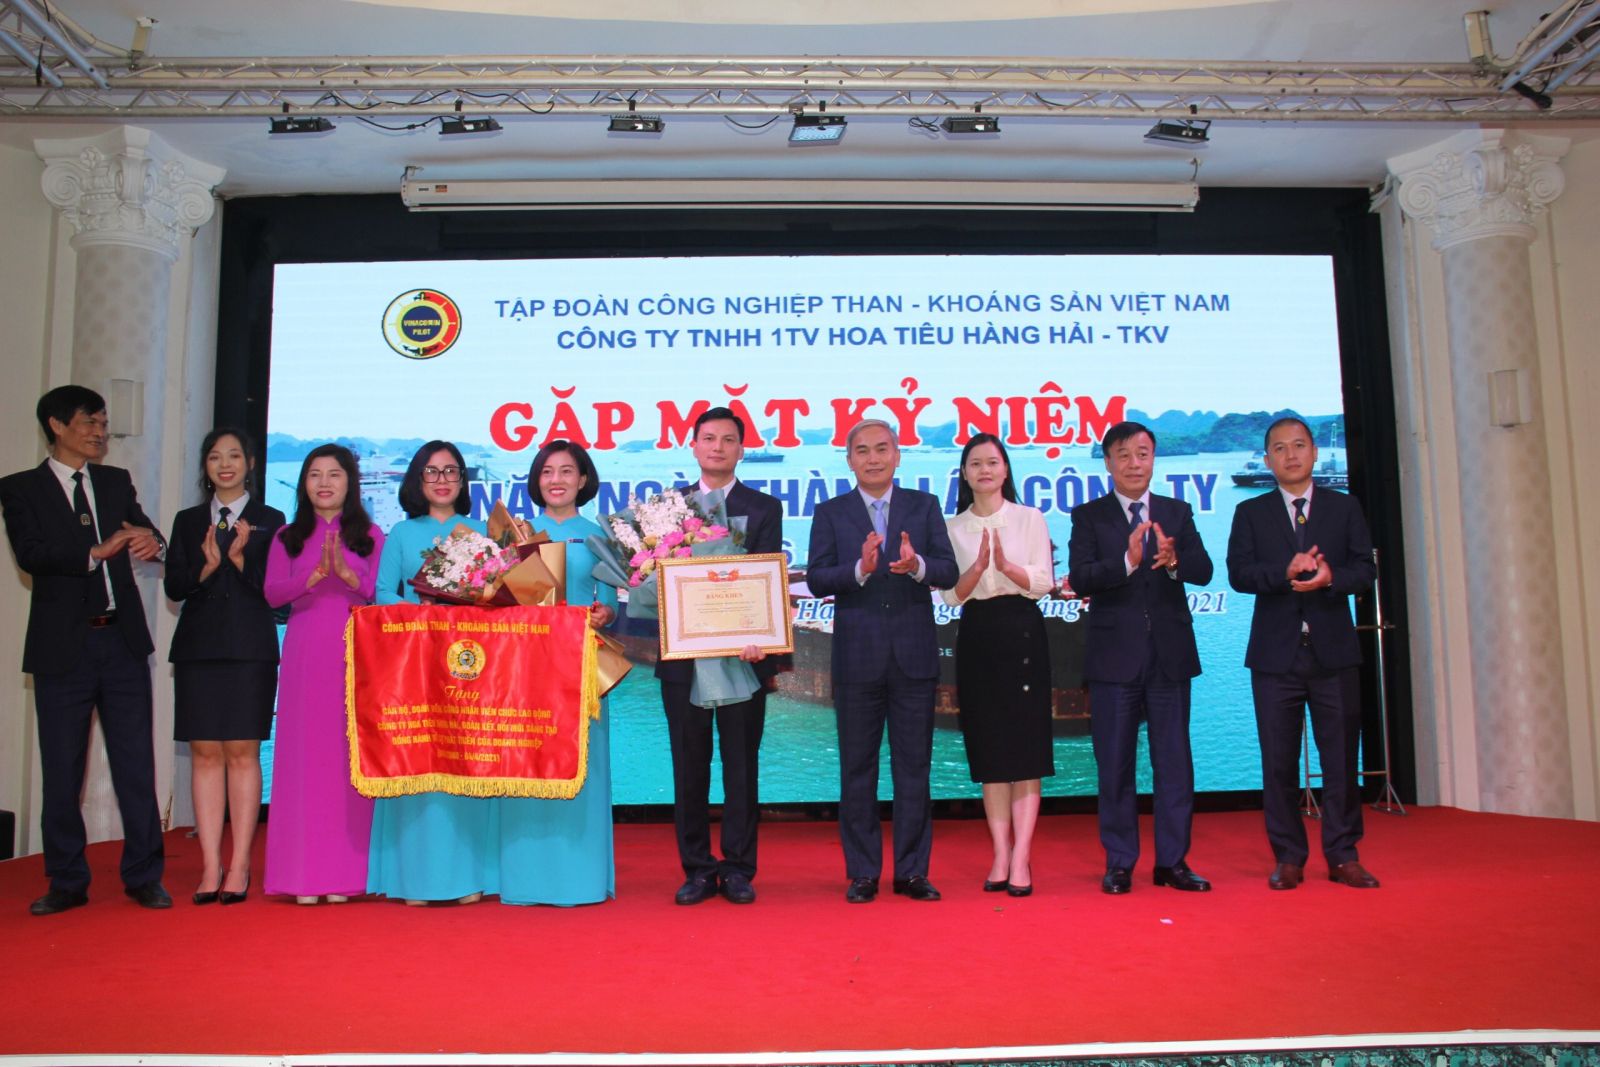 Công ty TNHH 1TV Hoa tiêu Hàng hải -TKV nhận Bằng khen của Tập đoàn CN Than -Khoáng sản Việt Nam vì đã có thành tích đóng góp cho sự nghiệp xây dựng và phát triển TKV